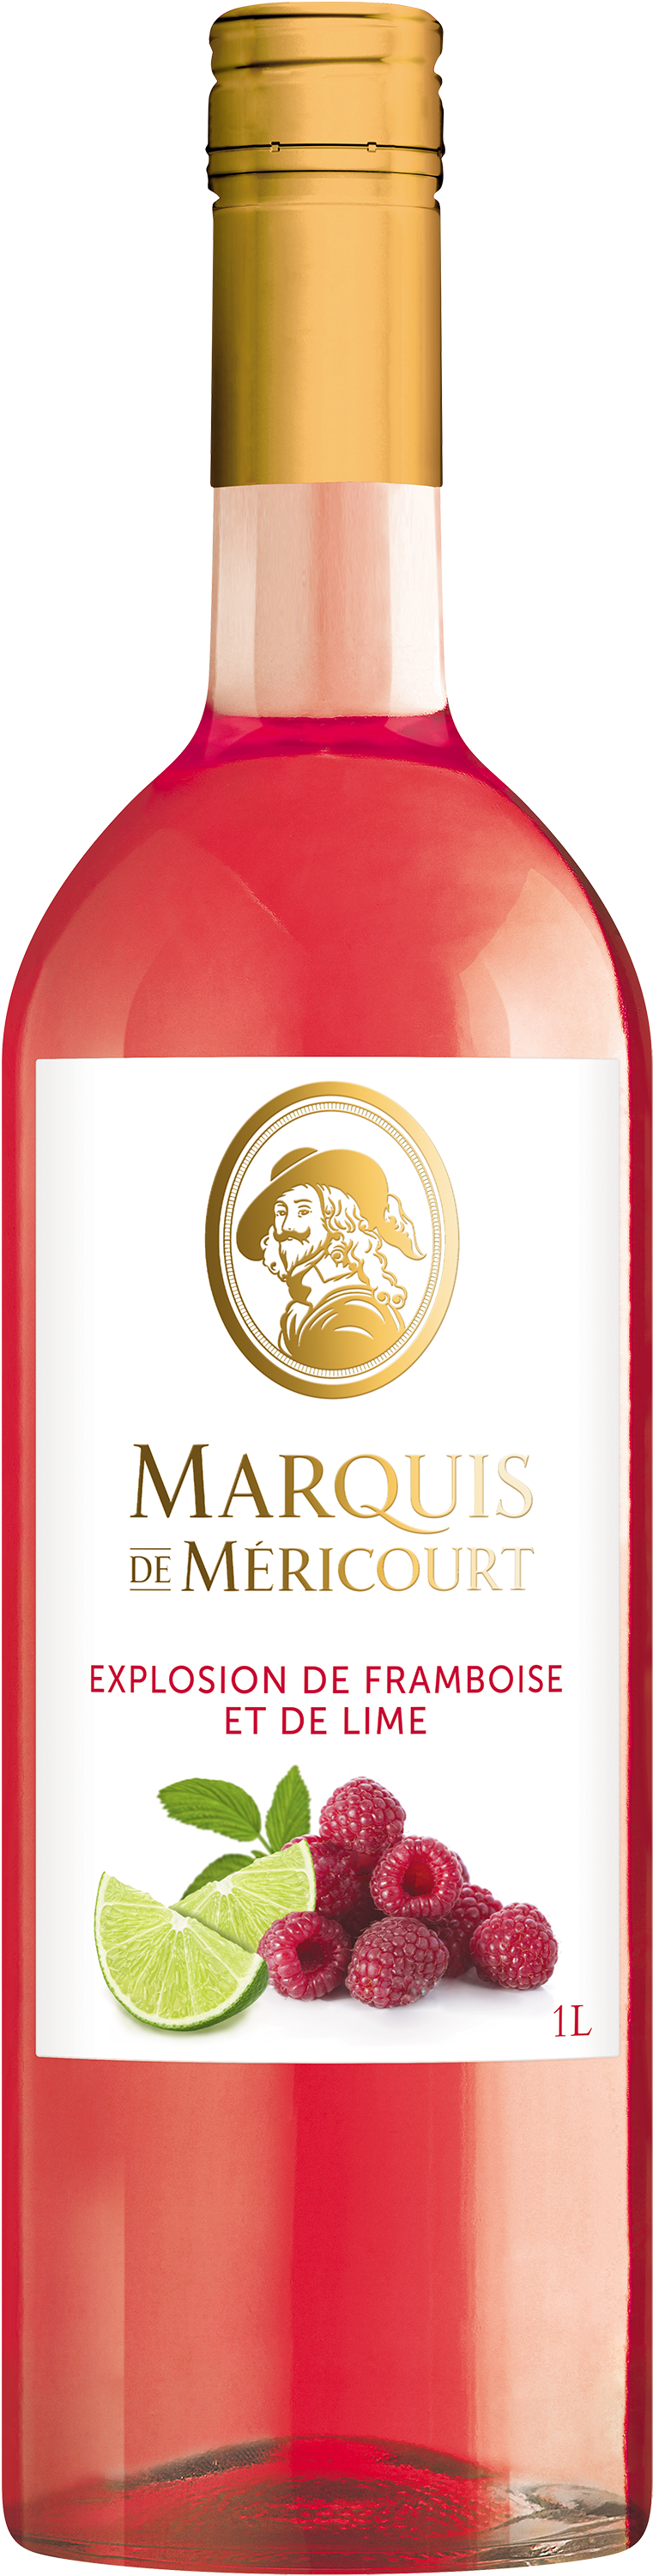 Marquis de Méricourt Explosion de framboise et de lime